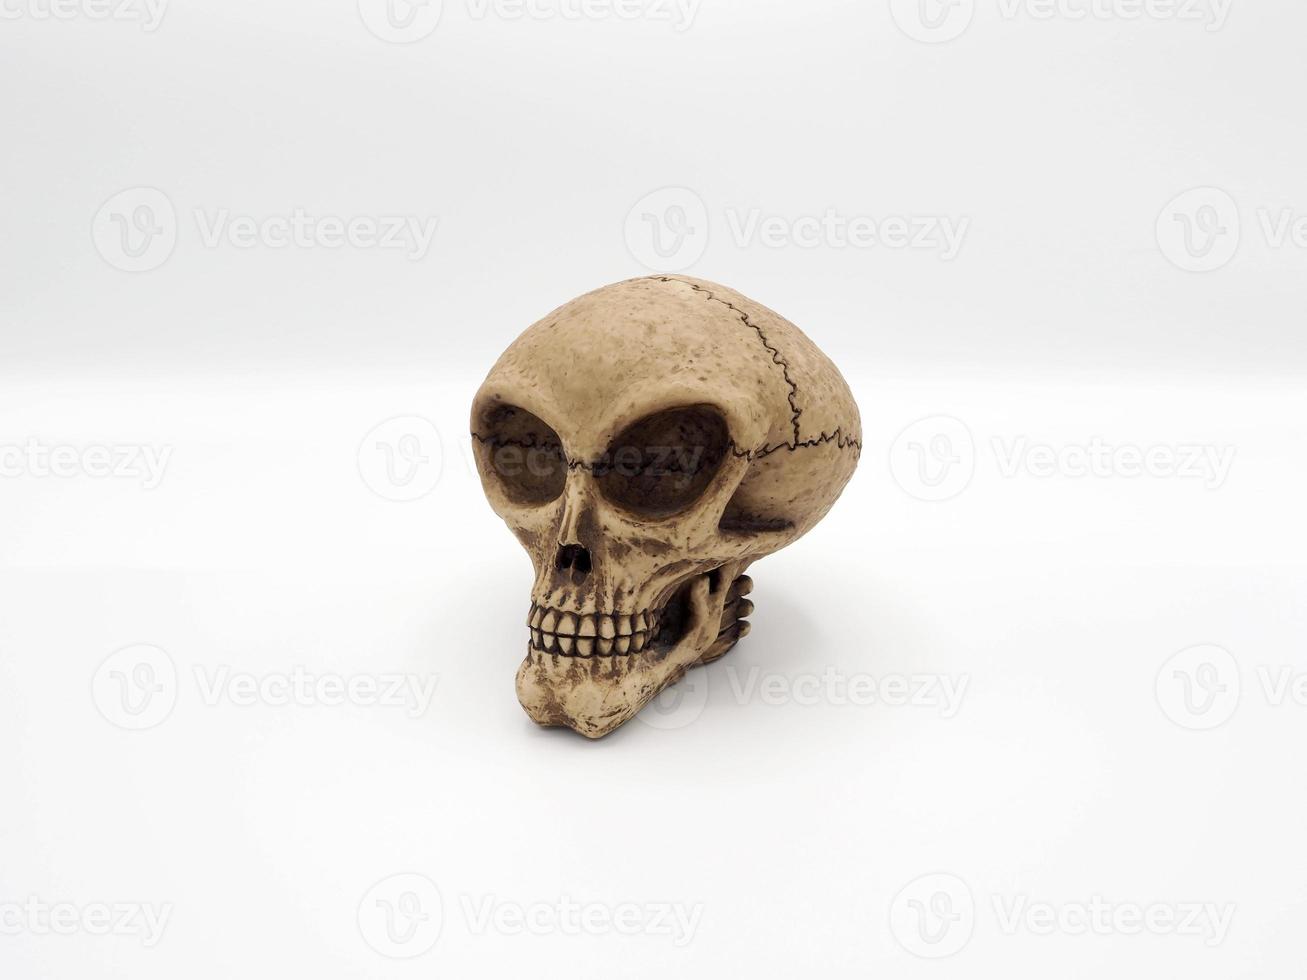 modèle de jouet de crâne extraterrestre fabriqué à partir de plastique racin à la main photo